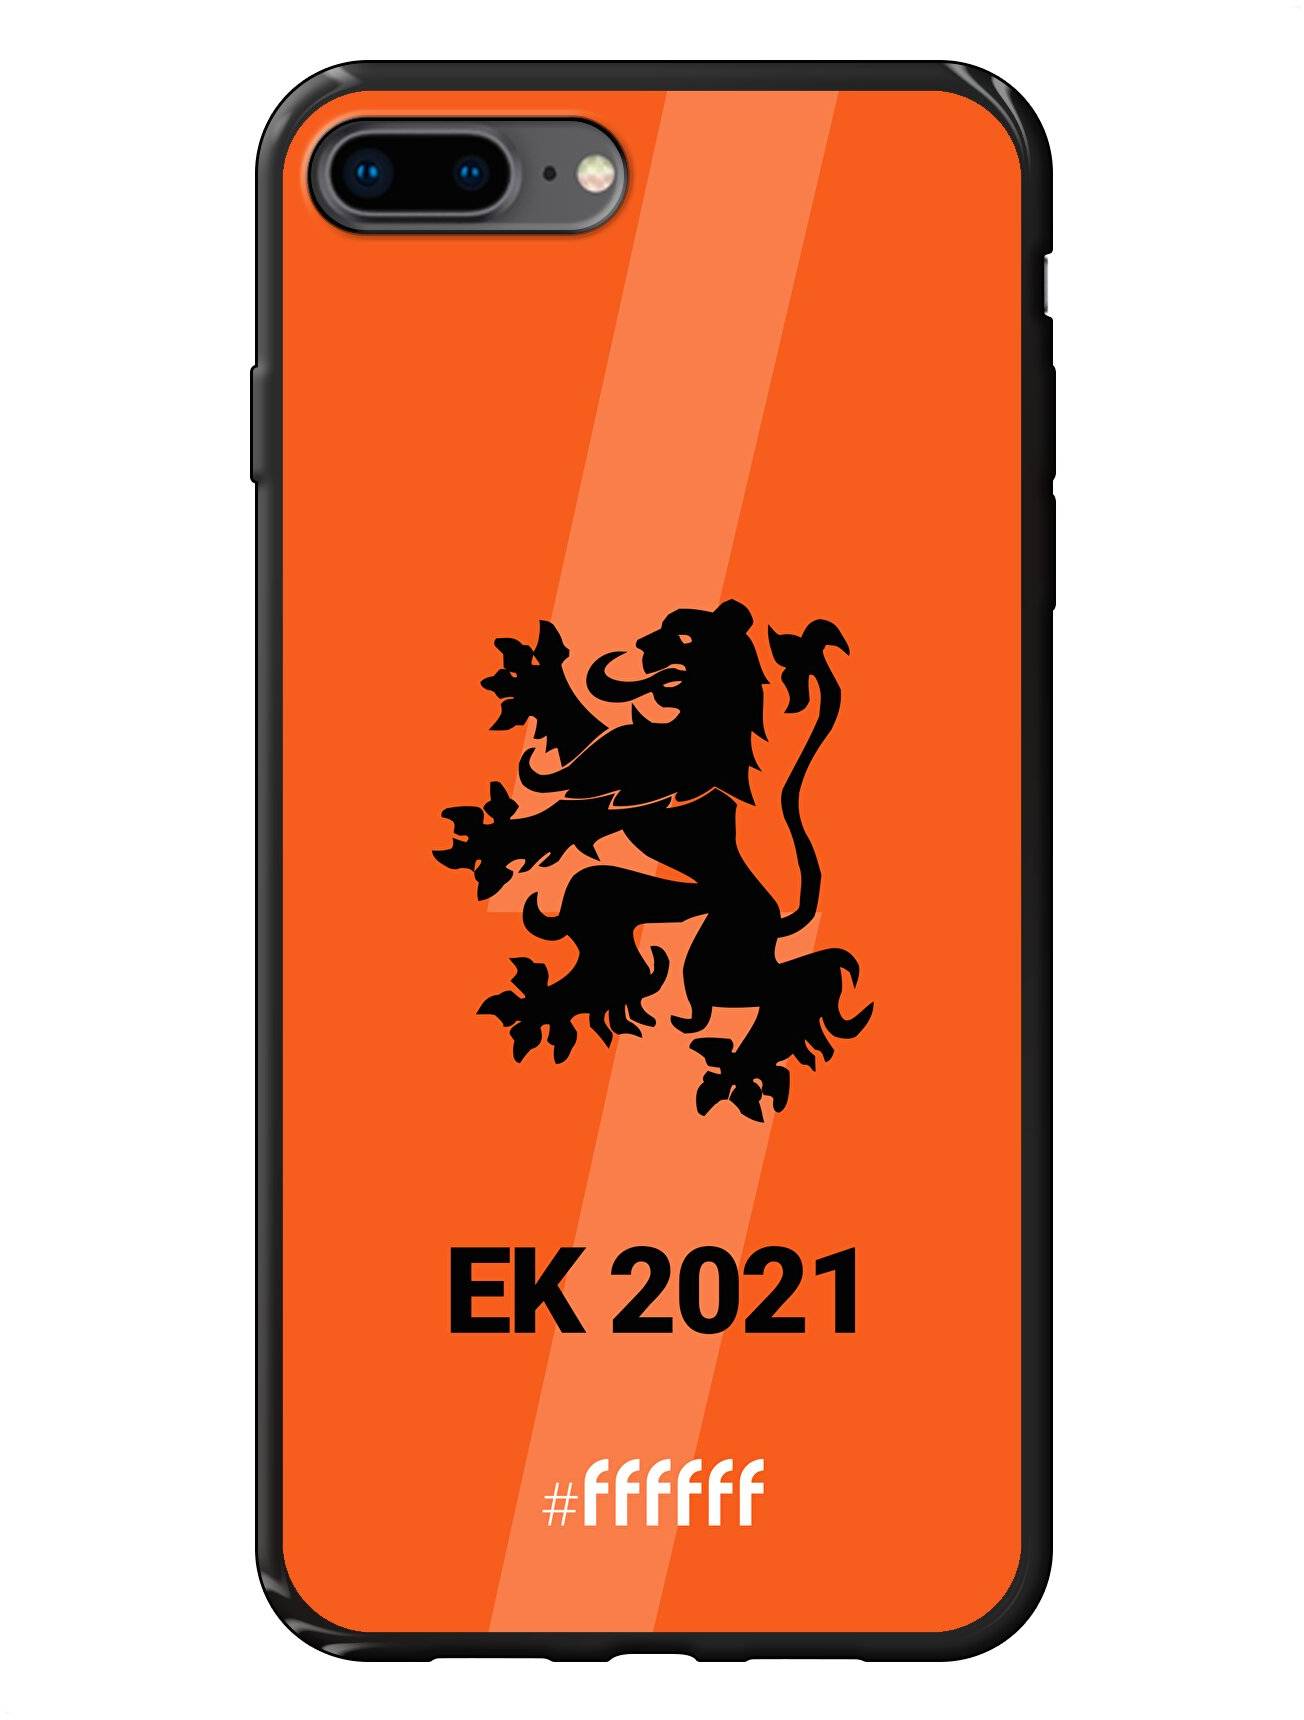 Nederlands Elftal - EK 2021 iPhone 8 Plus